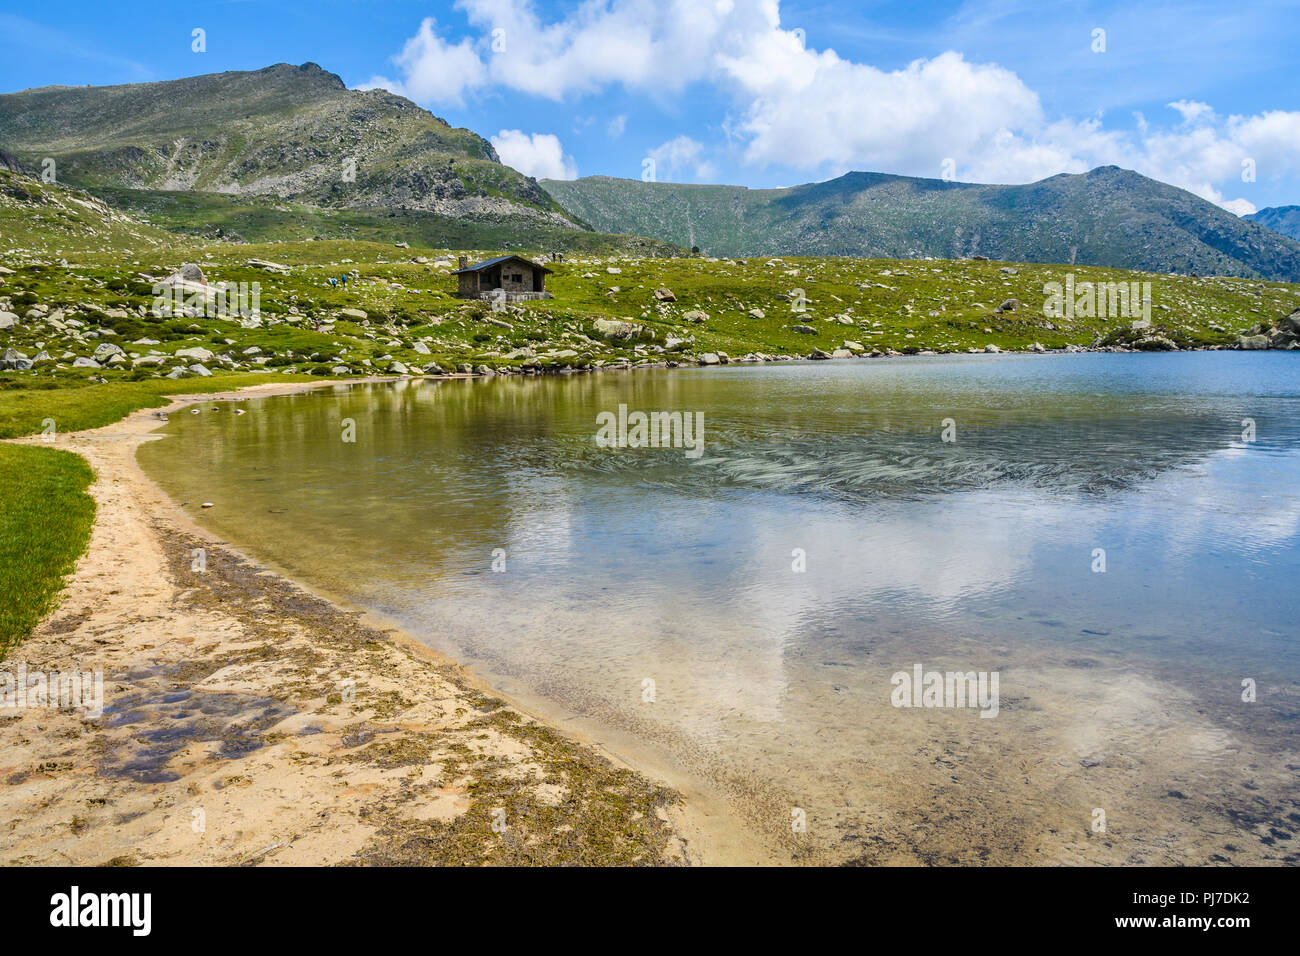 Plage de sable au bord du lac dans le circuit de Montmalus, Andorre Banque D'Images